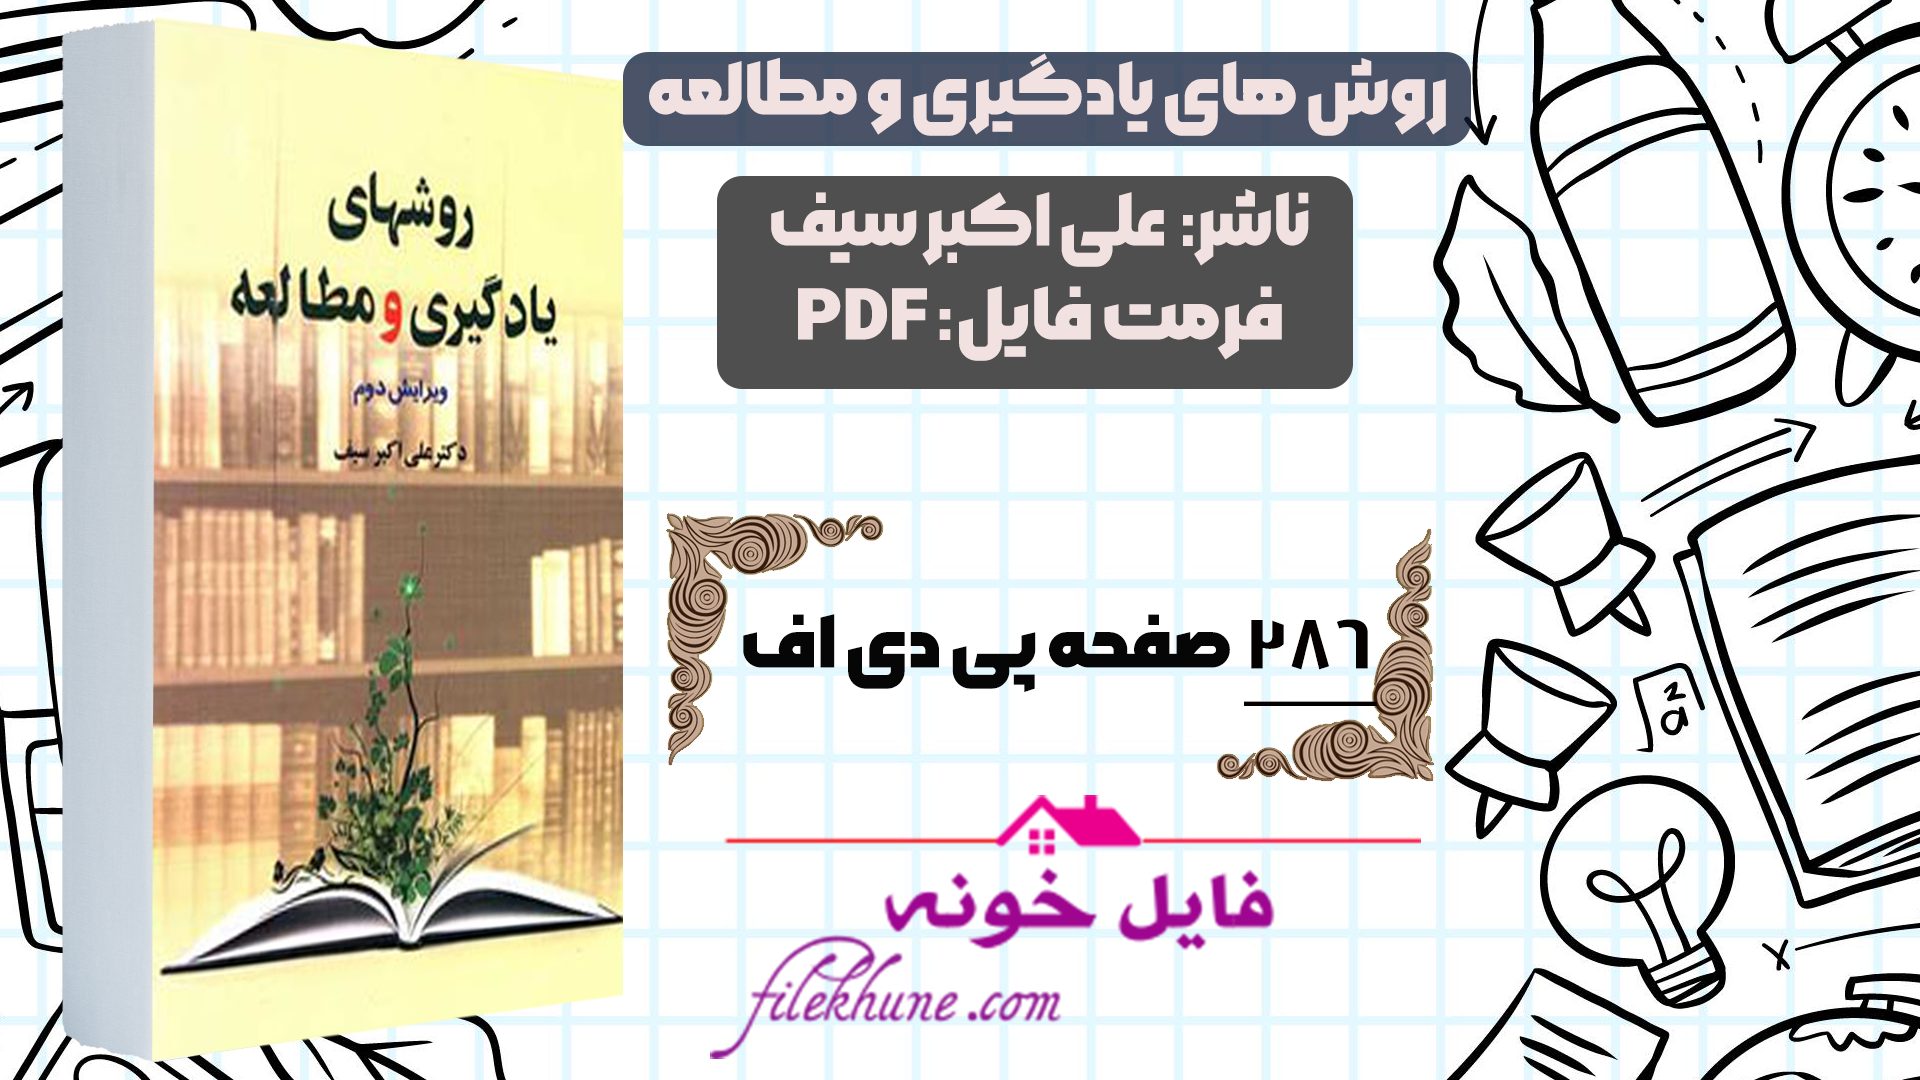 دانلود کتاب روش های یادگیری و مطالعه علی اکبر سیف PDF